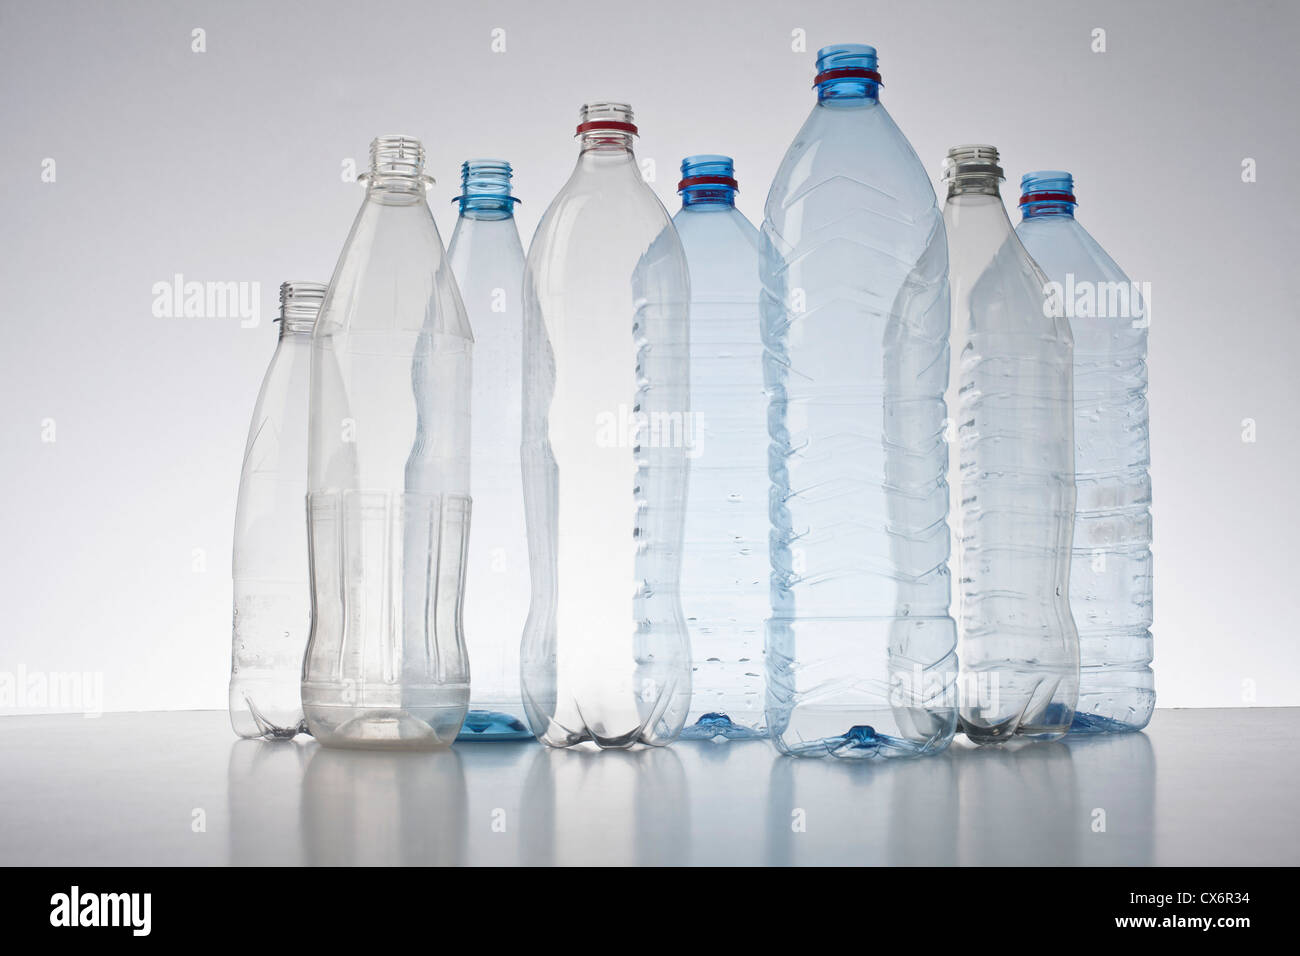 Row of plastic bottles Stock Photo